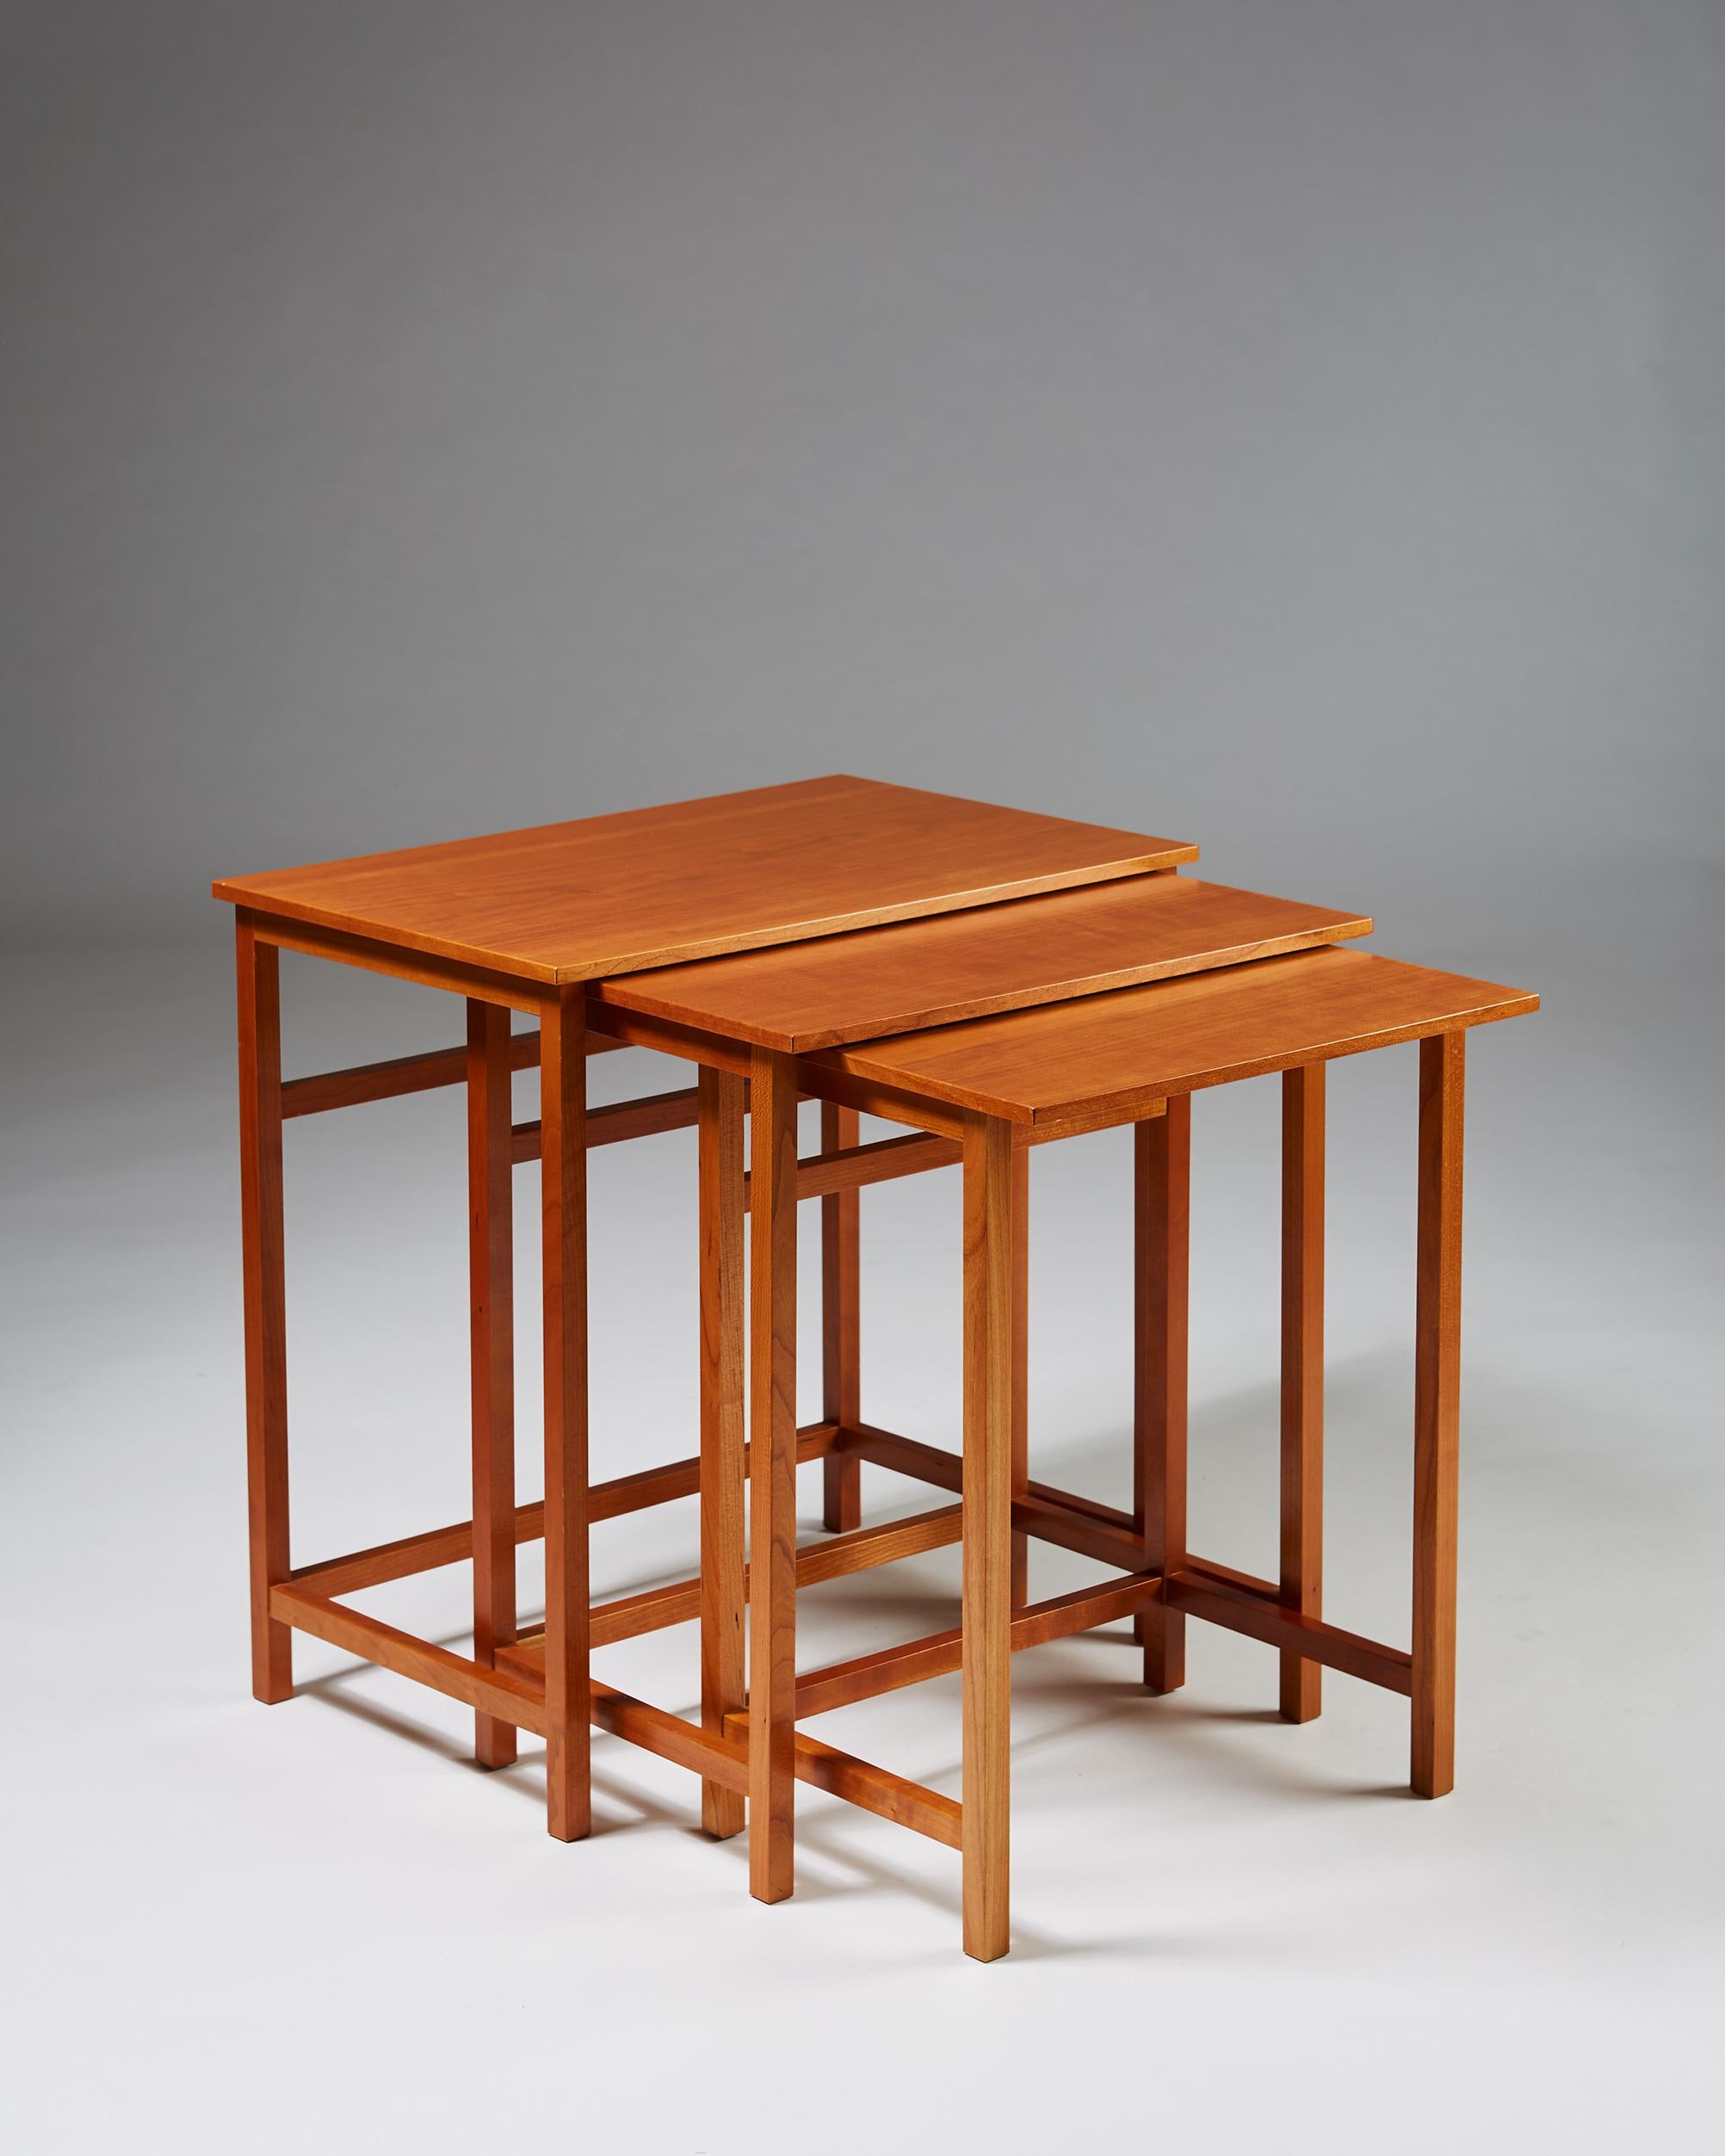 Tischgruppe Modell 618, entworfen von Josef Frank für Svenkst Tenn, Schweden, 1950. Kirsche.

Gestempelt.